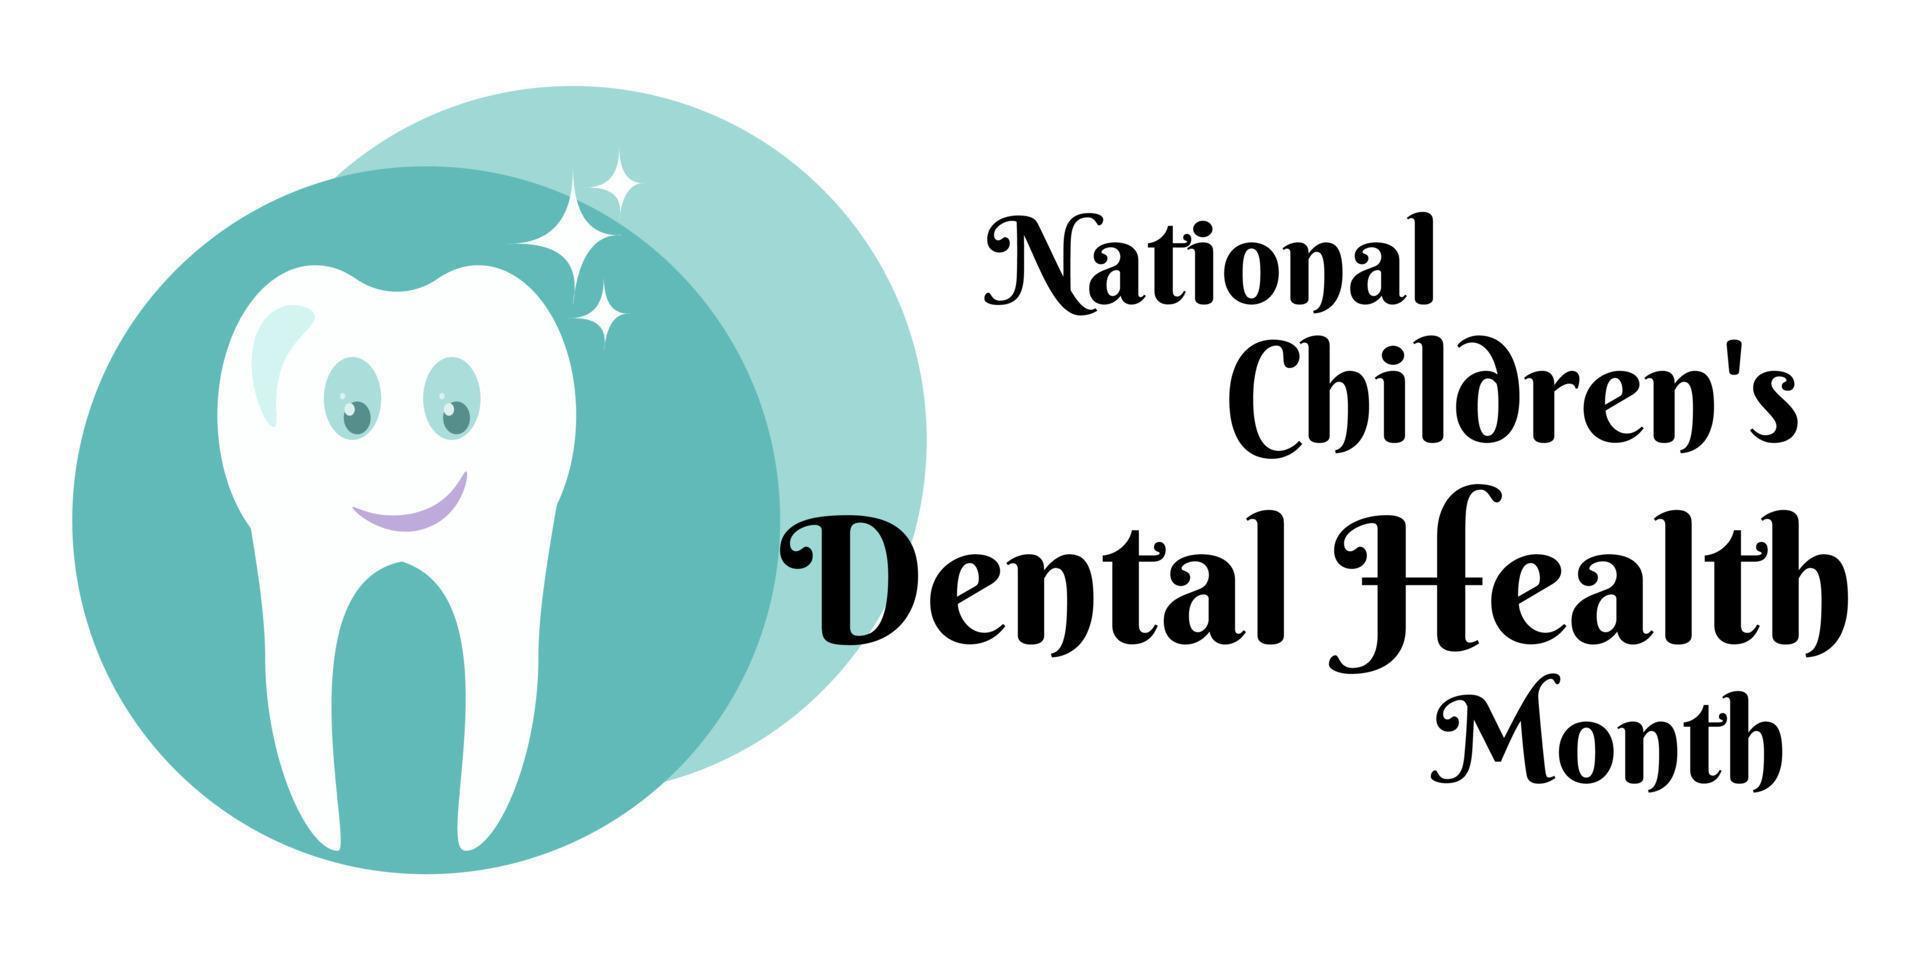 nationell barns dental hälsa månad, horisontell design på de tema av hälsa och medicin vektor